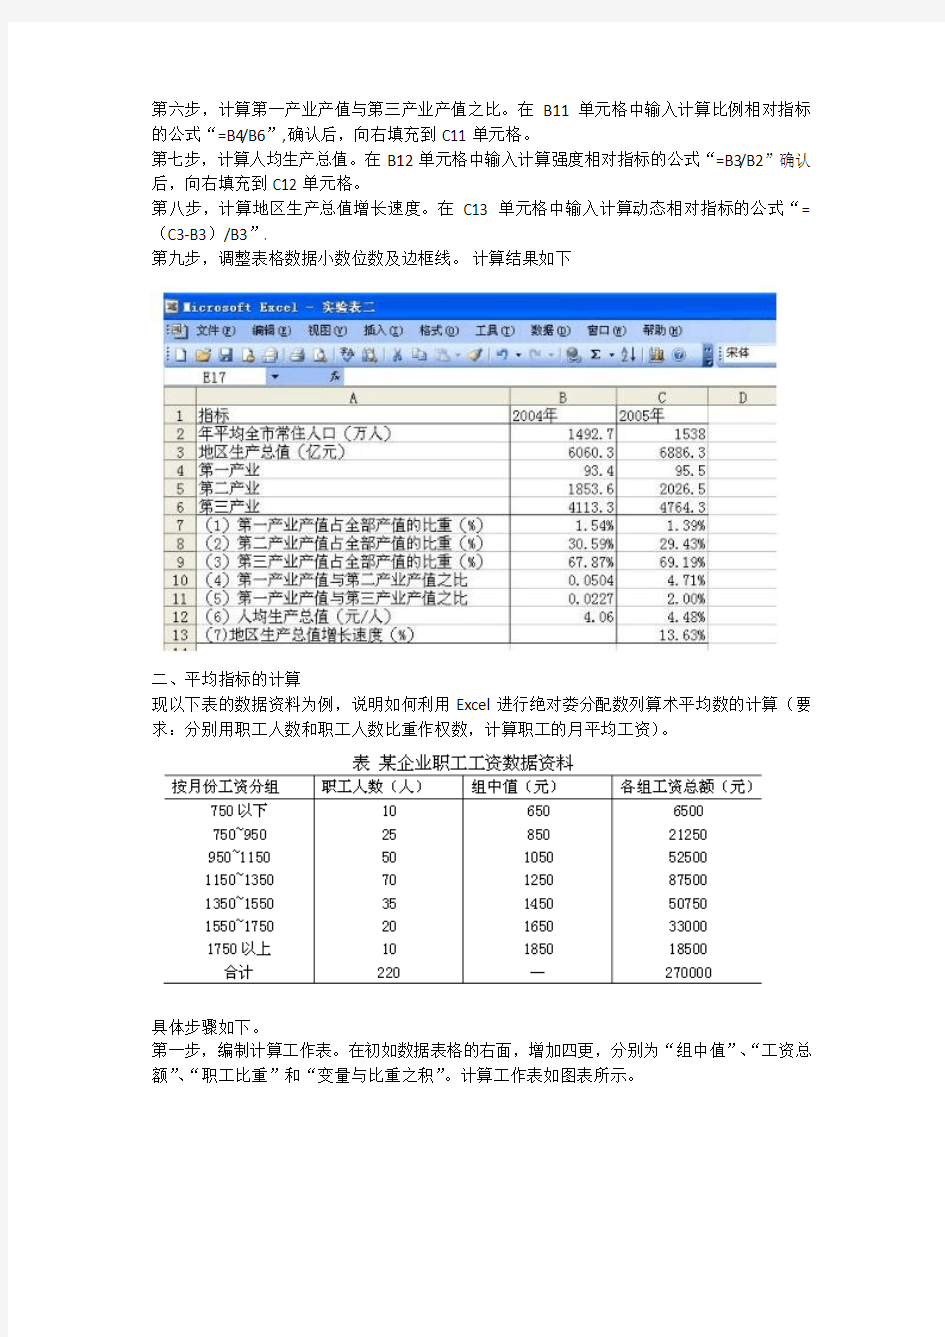 统计学原理实验报告 应用Excel计算描述统计指标